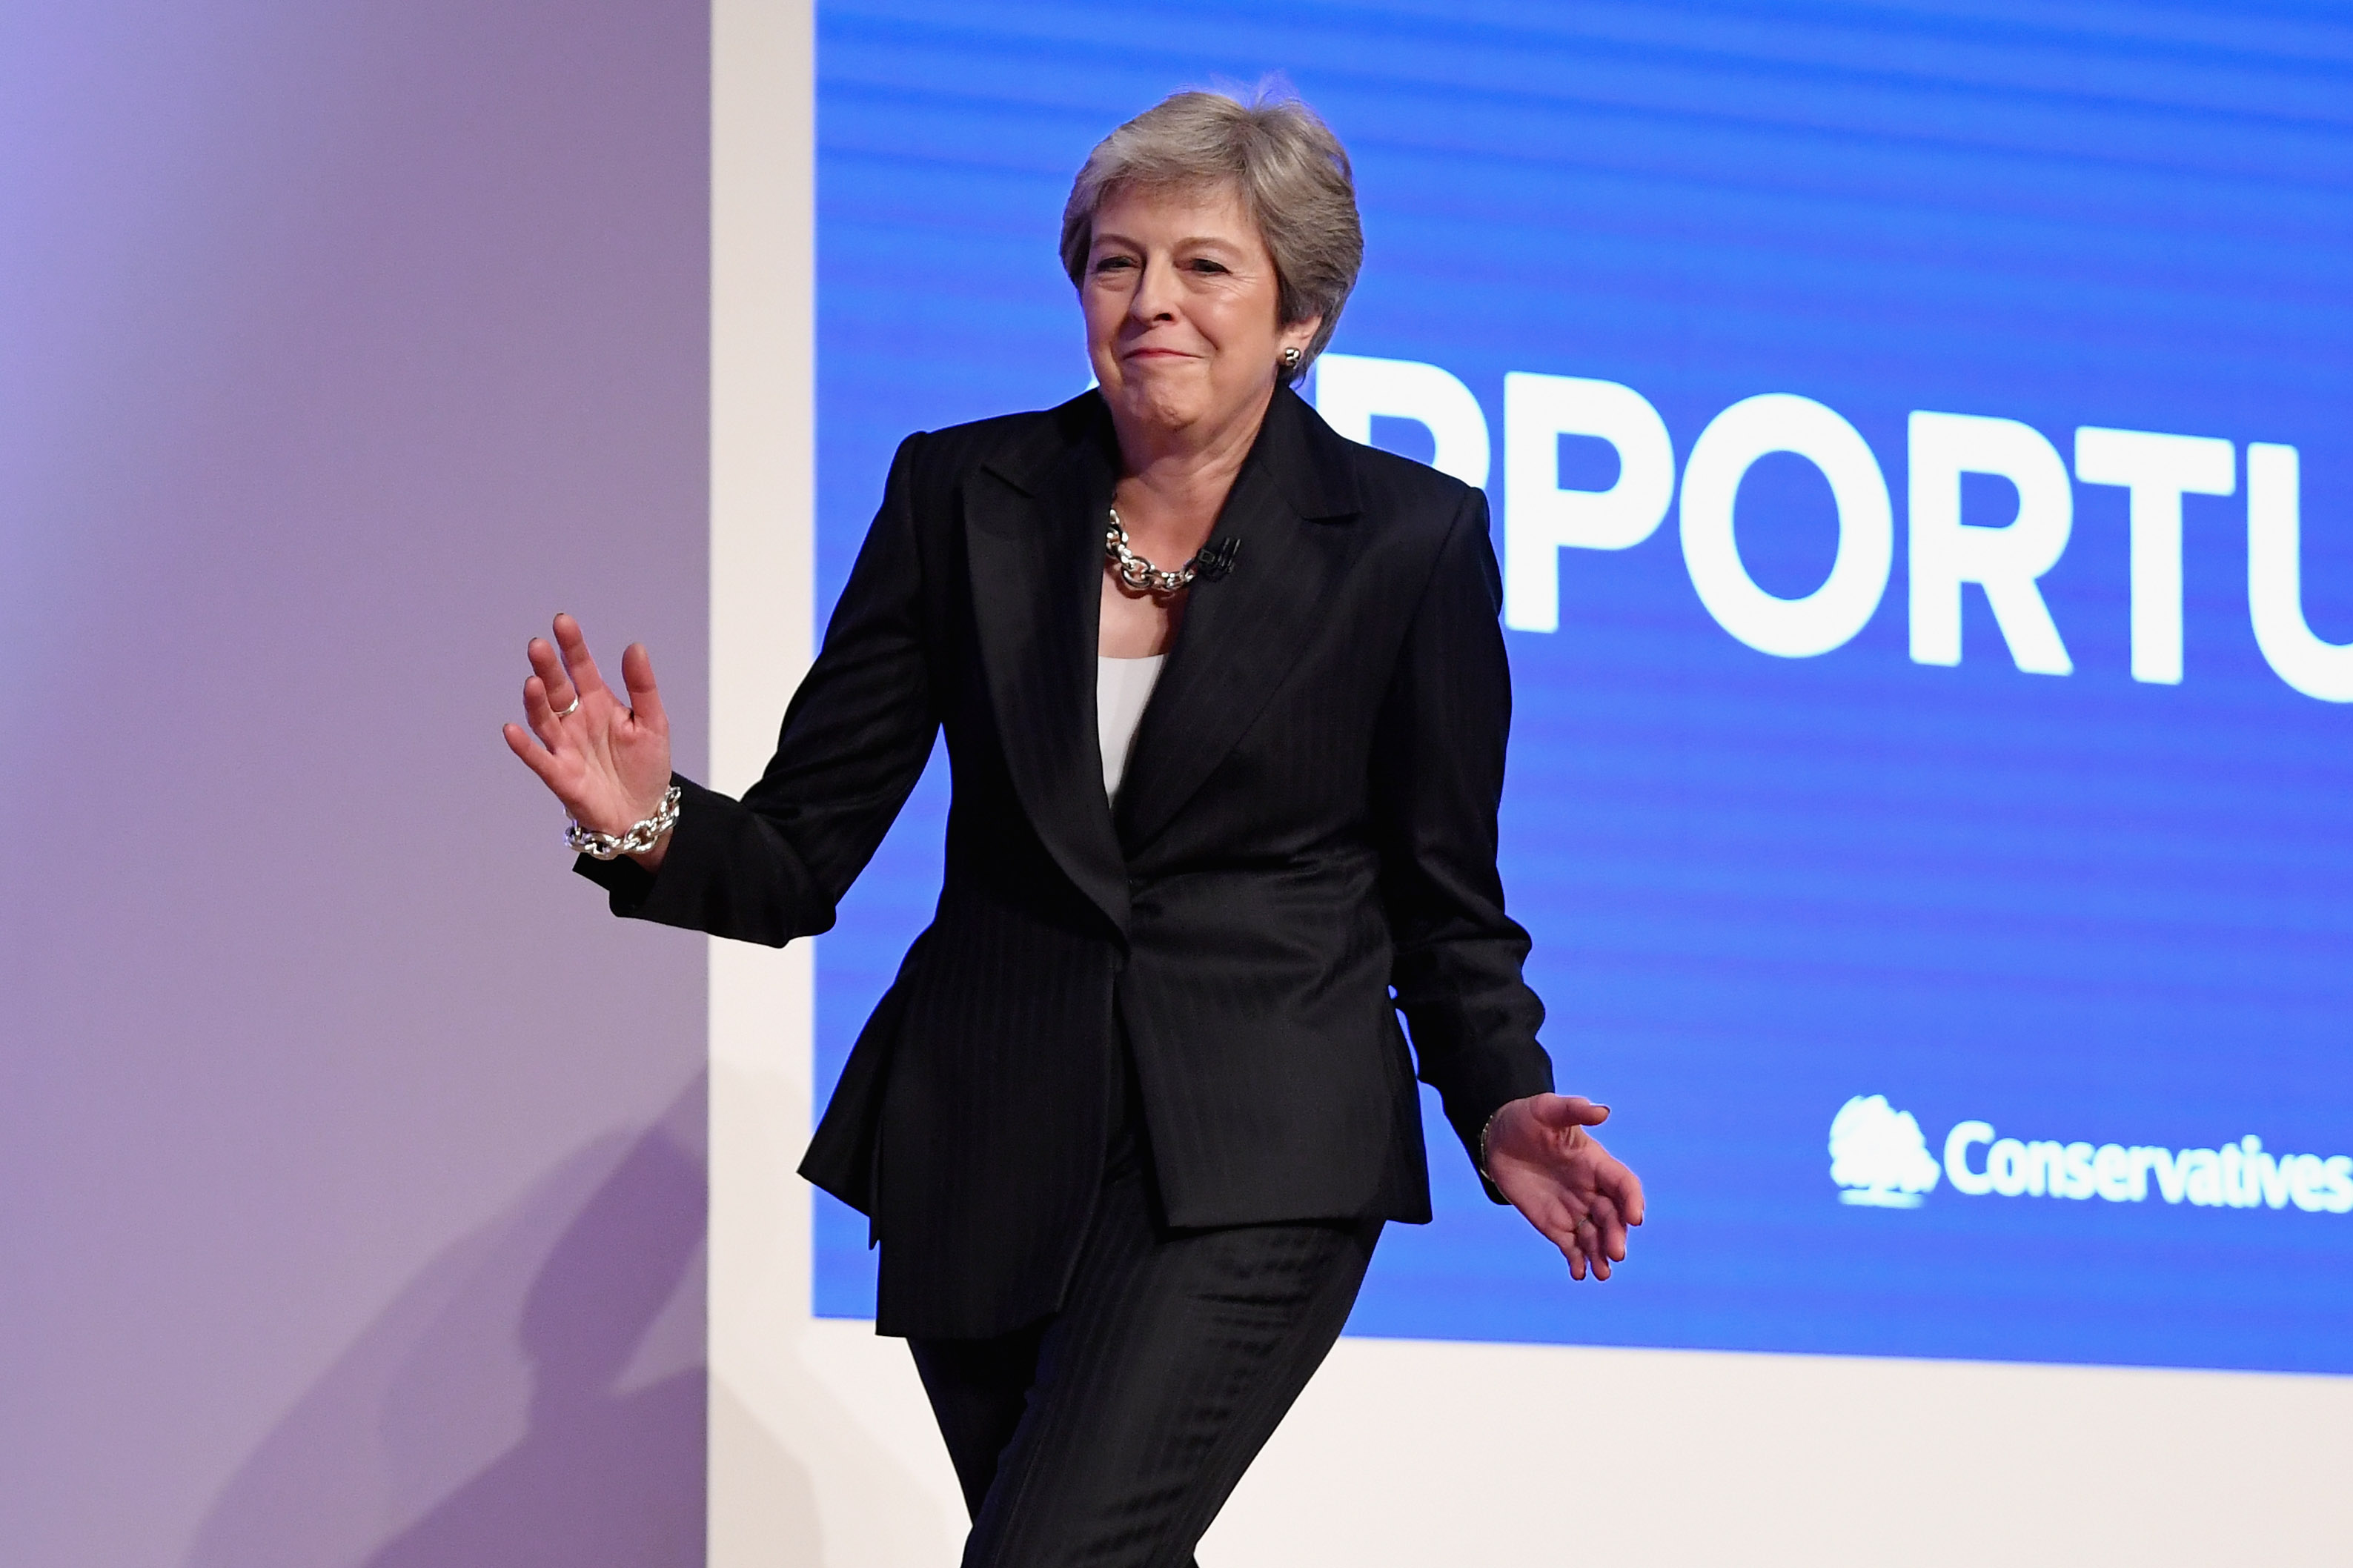 A photo of Theresa May dancing.